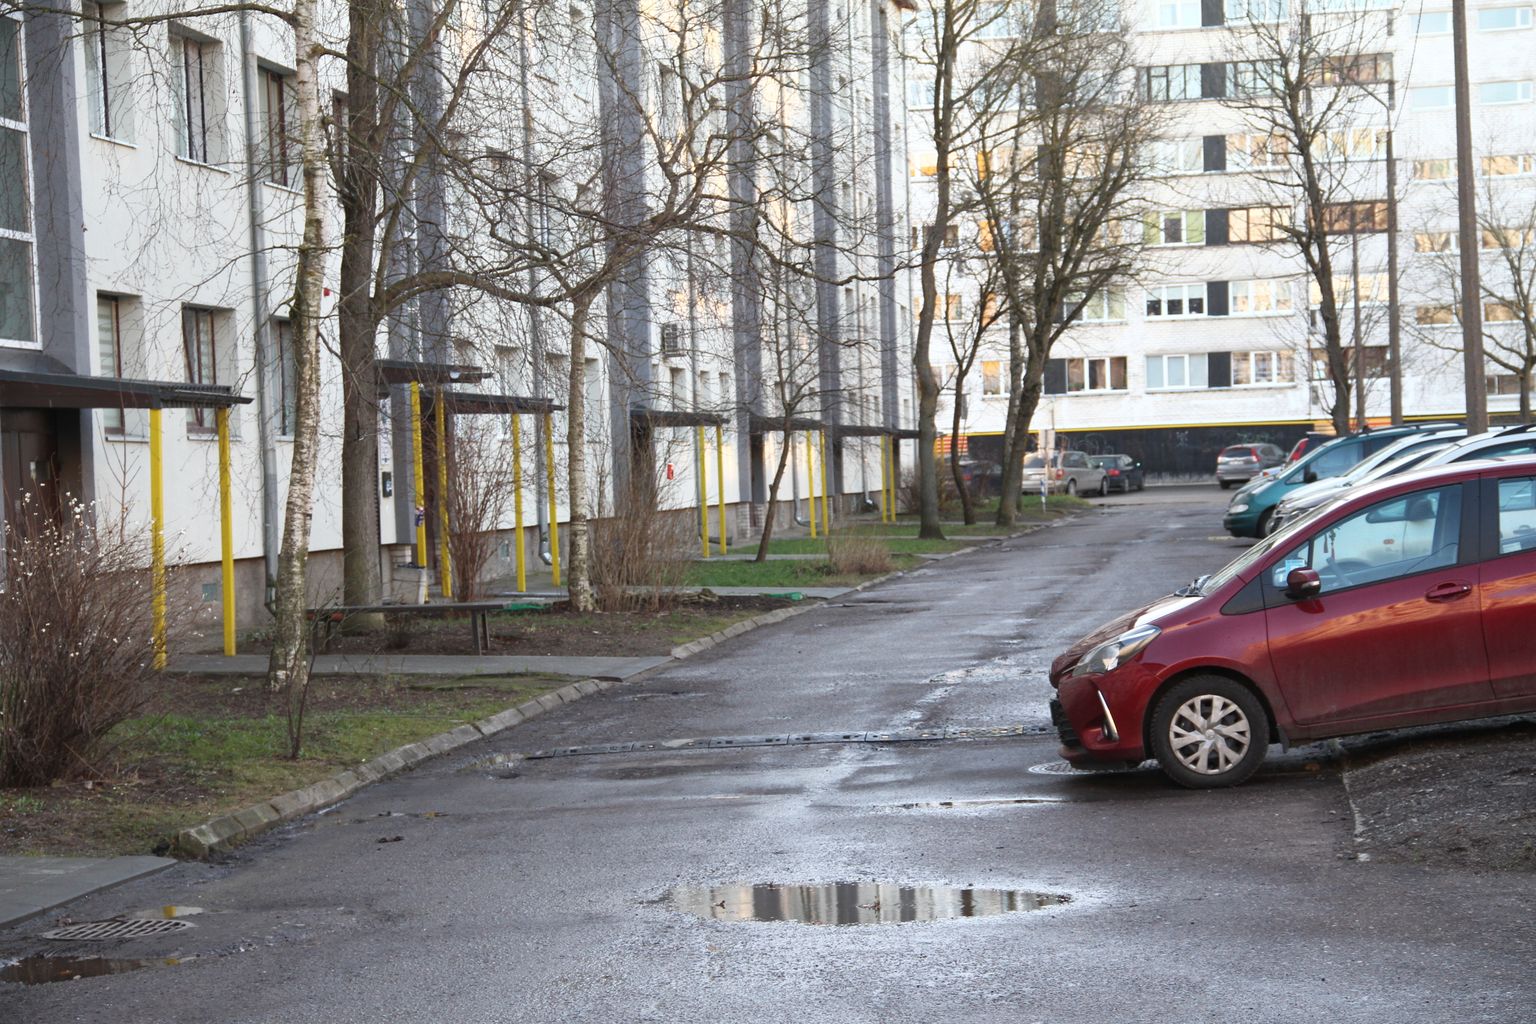 Разместить все машины жильцов дома 48 по Таллиннскому шоссе в Нарве на узкой дороге невозможно, поэтому они паркуются на газоне и хотят построить парковку.